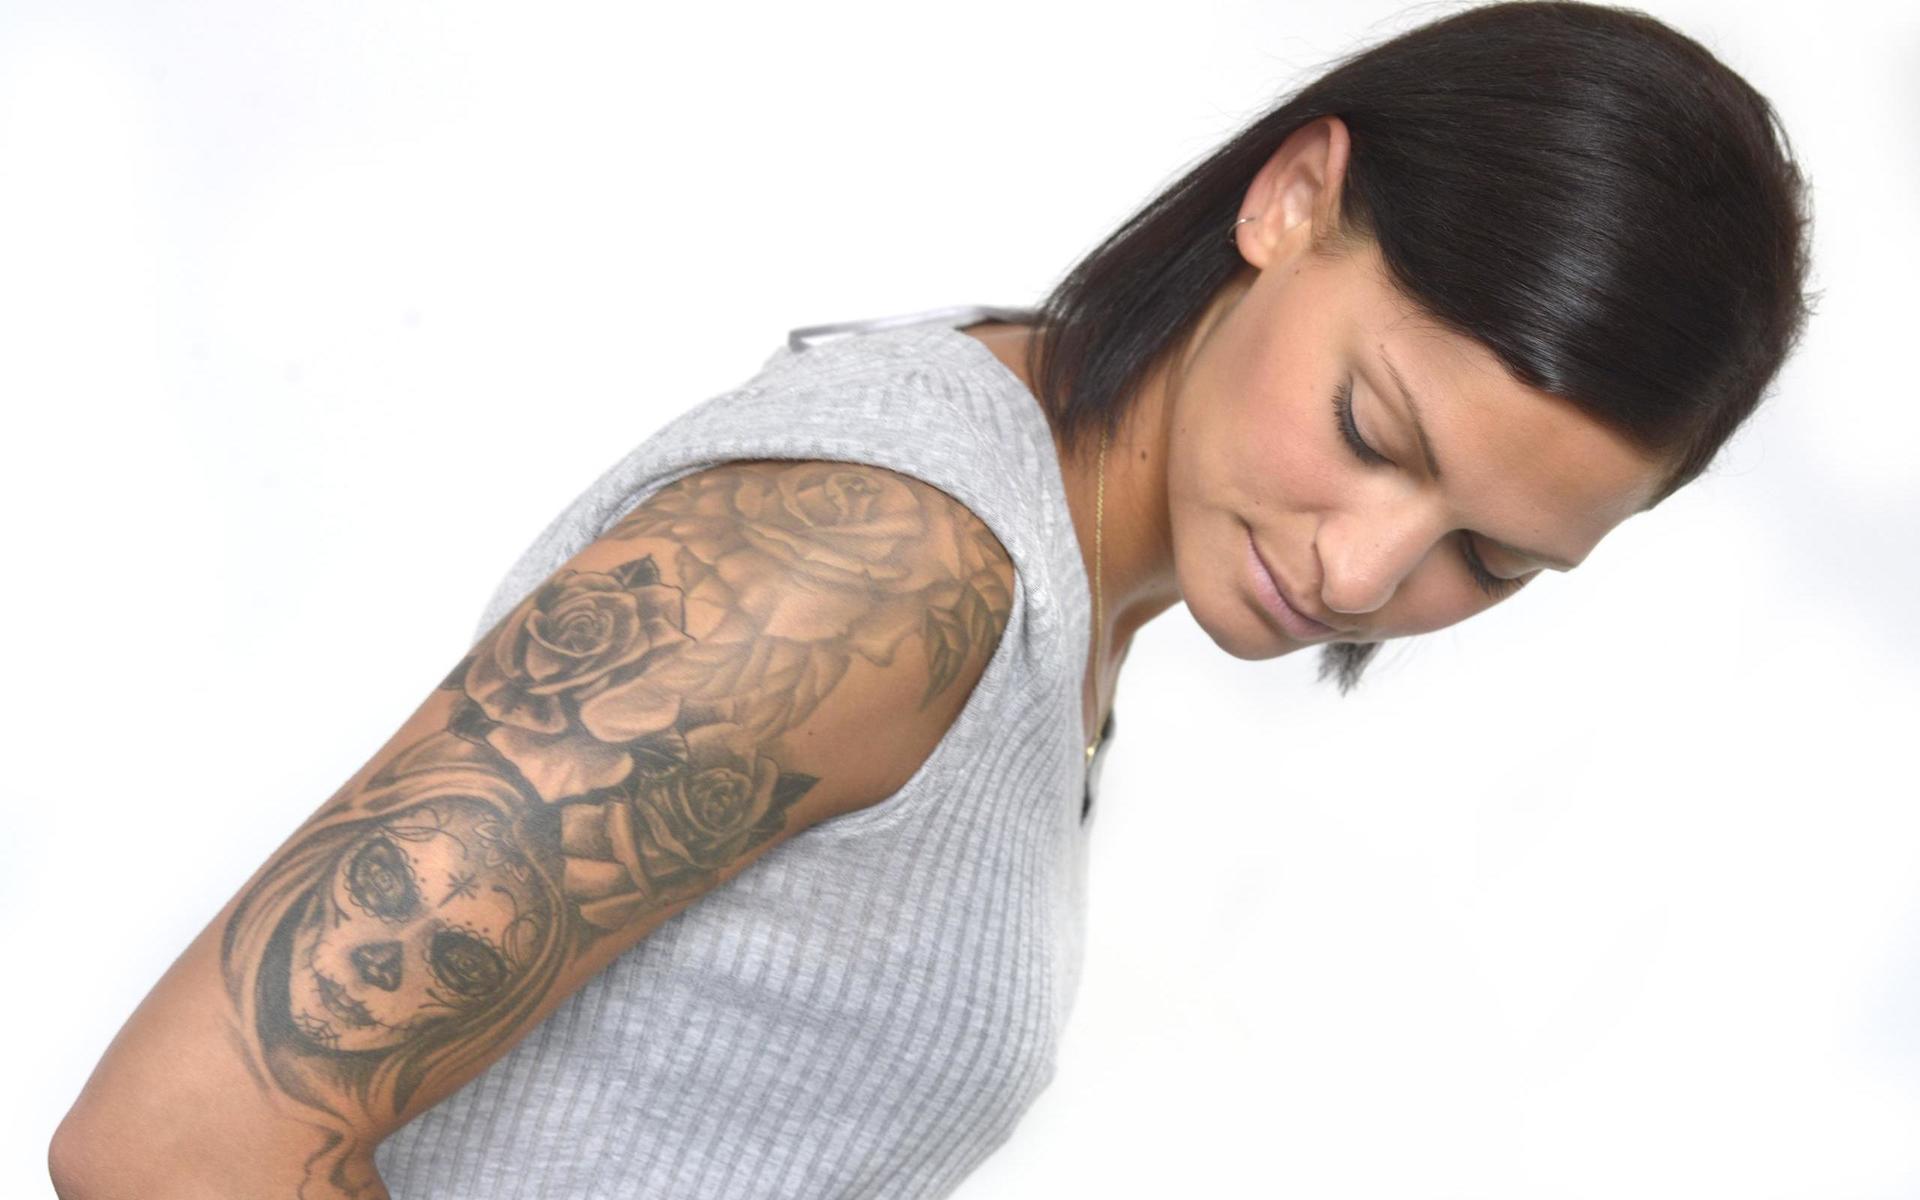 Cecilia Habib Wesths tatueringar speglar livets väsentligheter. 